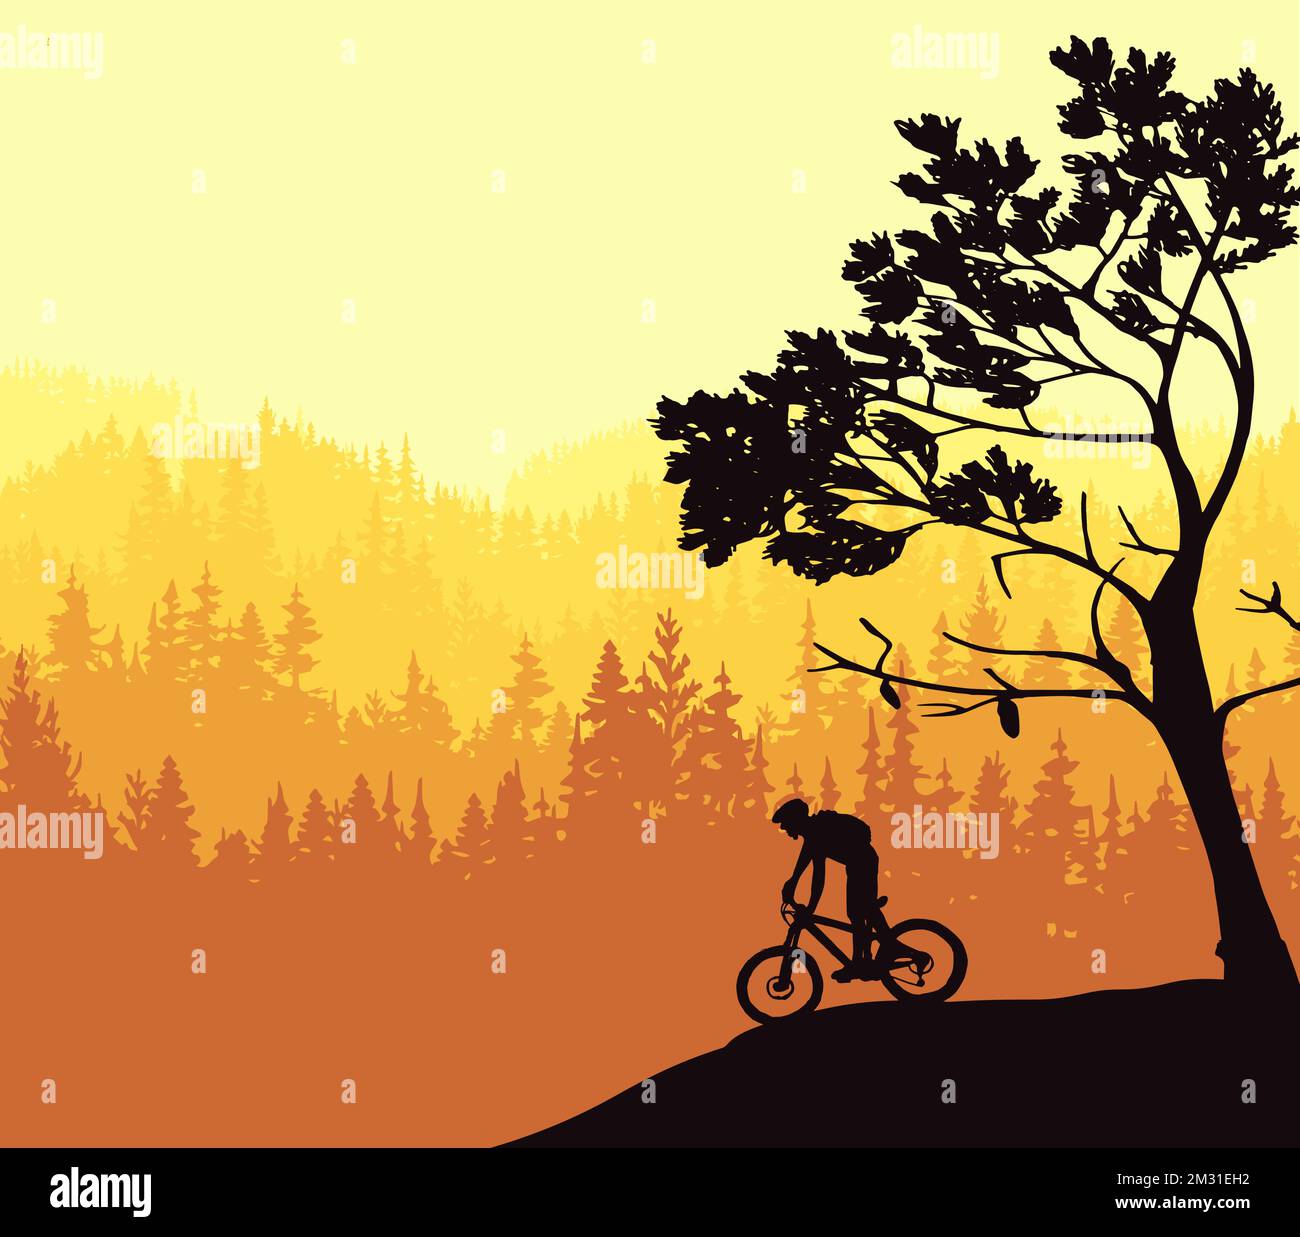 Silhouette eines Mountainbike-Fahrers in wilder Naturlandschaft. Berge, Wald im Hintergrund. Magische neblige Natur. Gelbe Abbildung. Stock Vektor